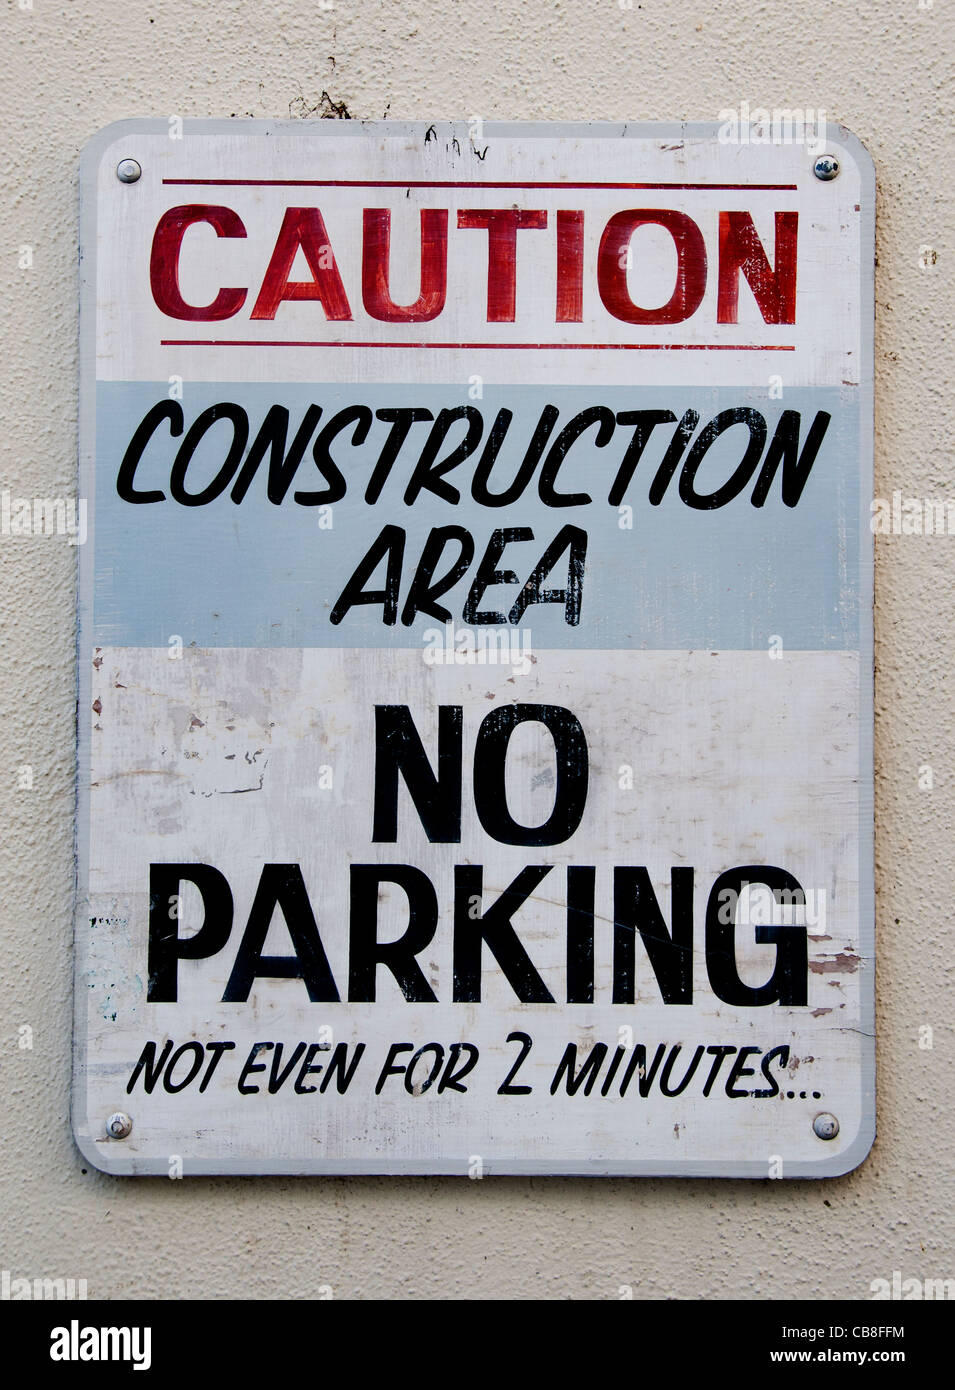 Attention Pas de parking Zone de construction pour même pas 2 minutes Santa Barbara California United States Banque D'Images